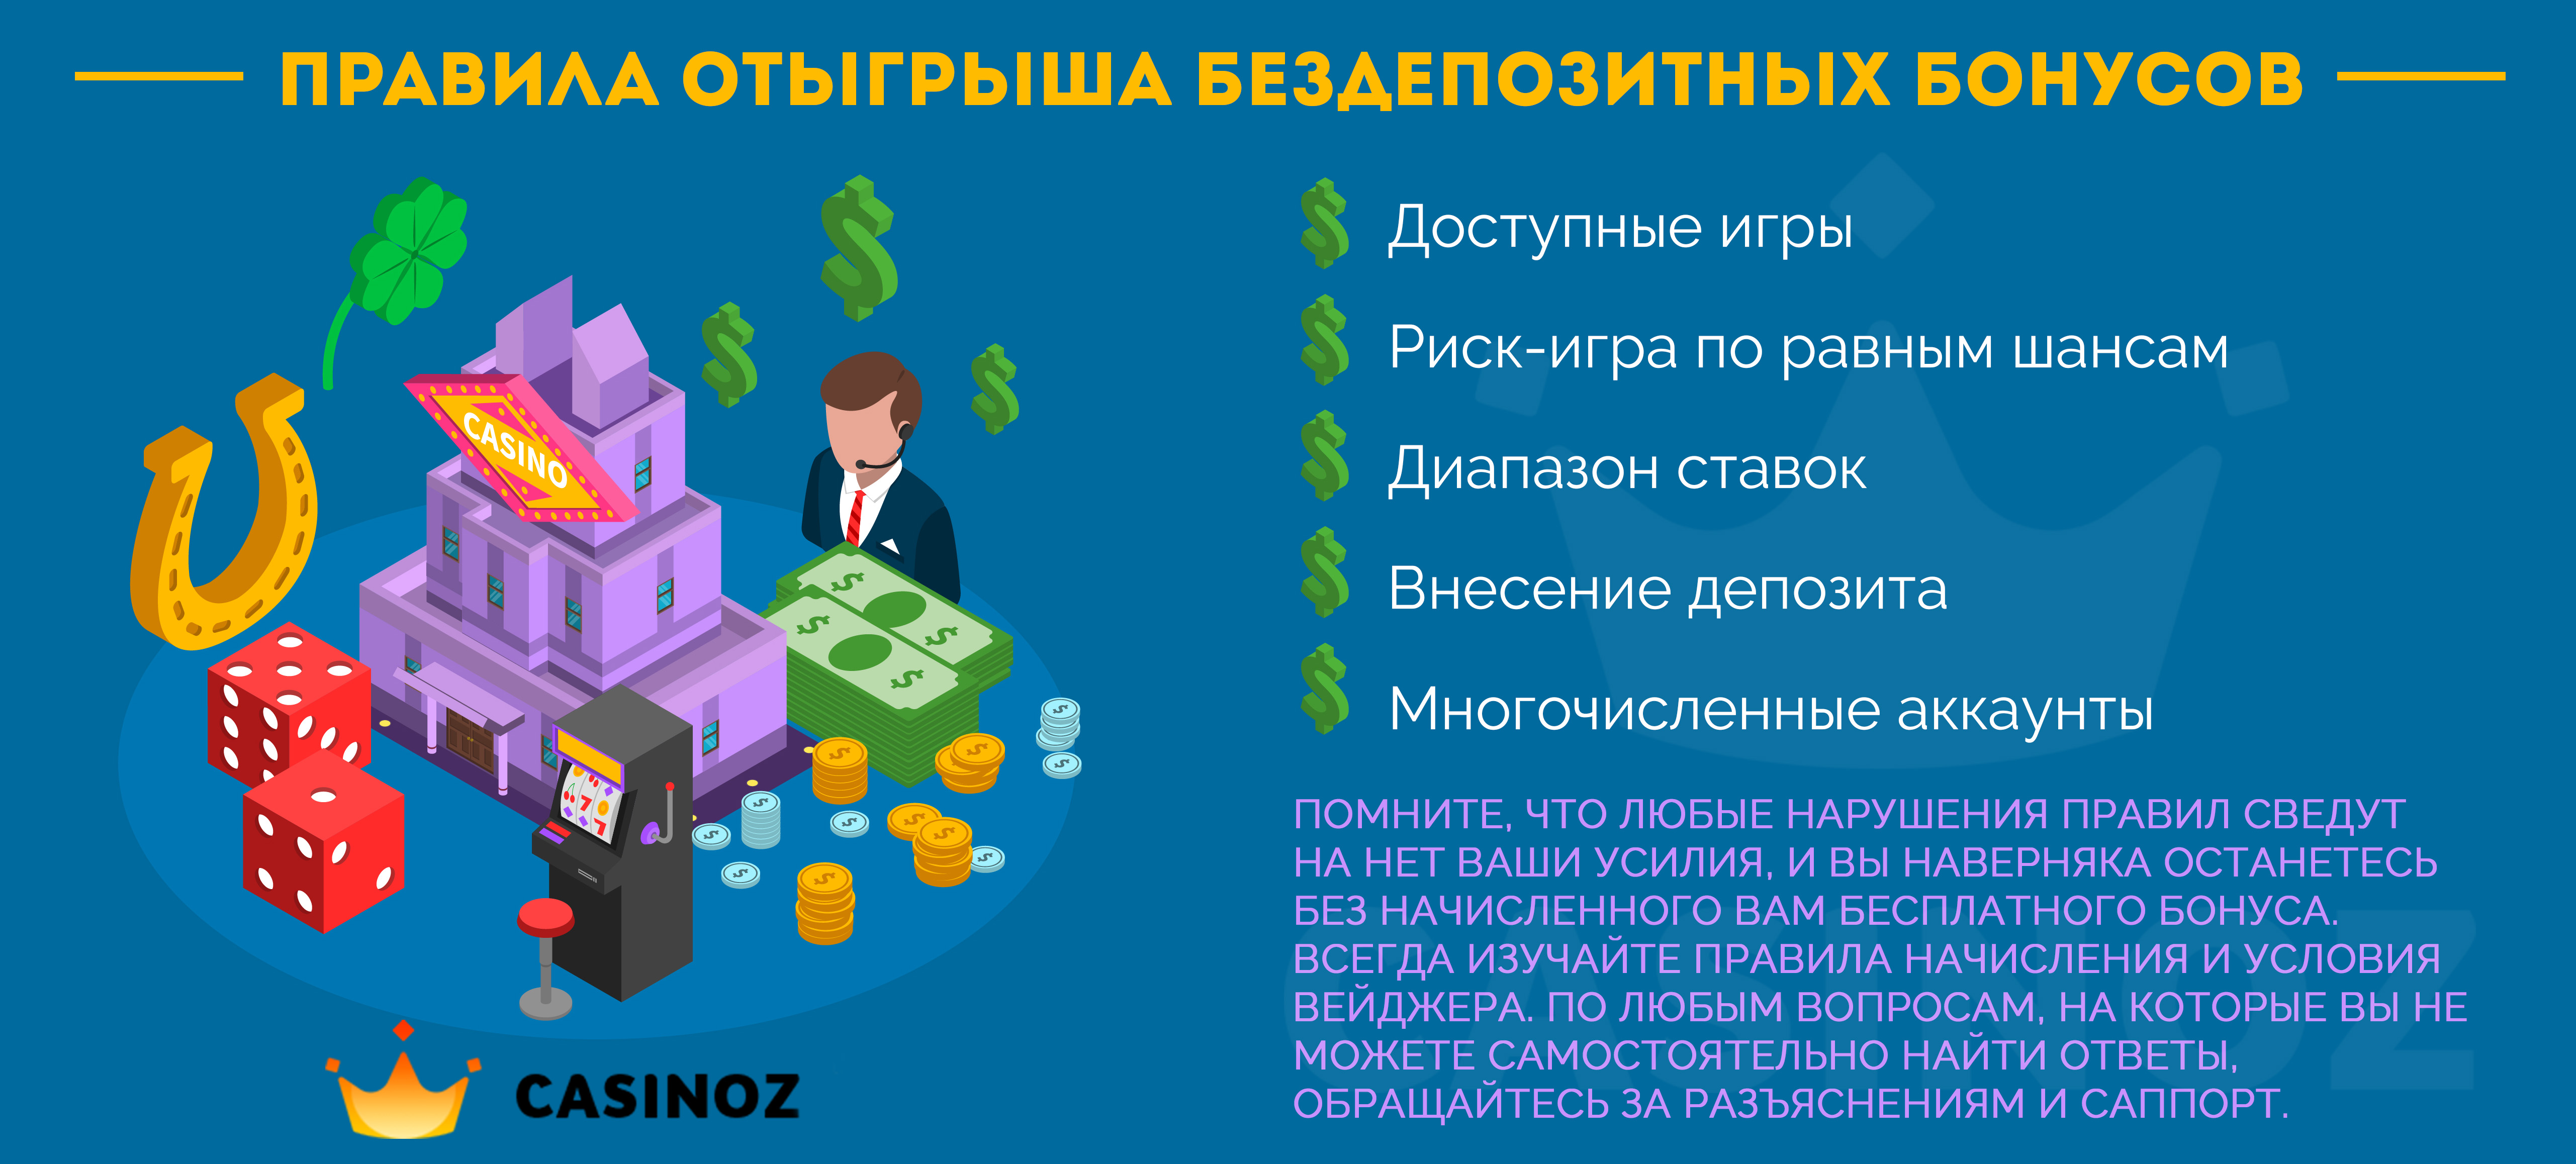 Интернет казино с бонусом без депозита скачать покер на компьютер бесплатно не онлайн на русском